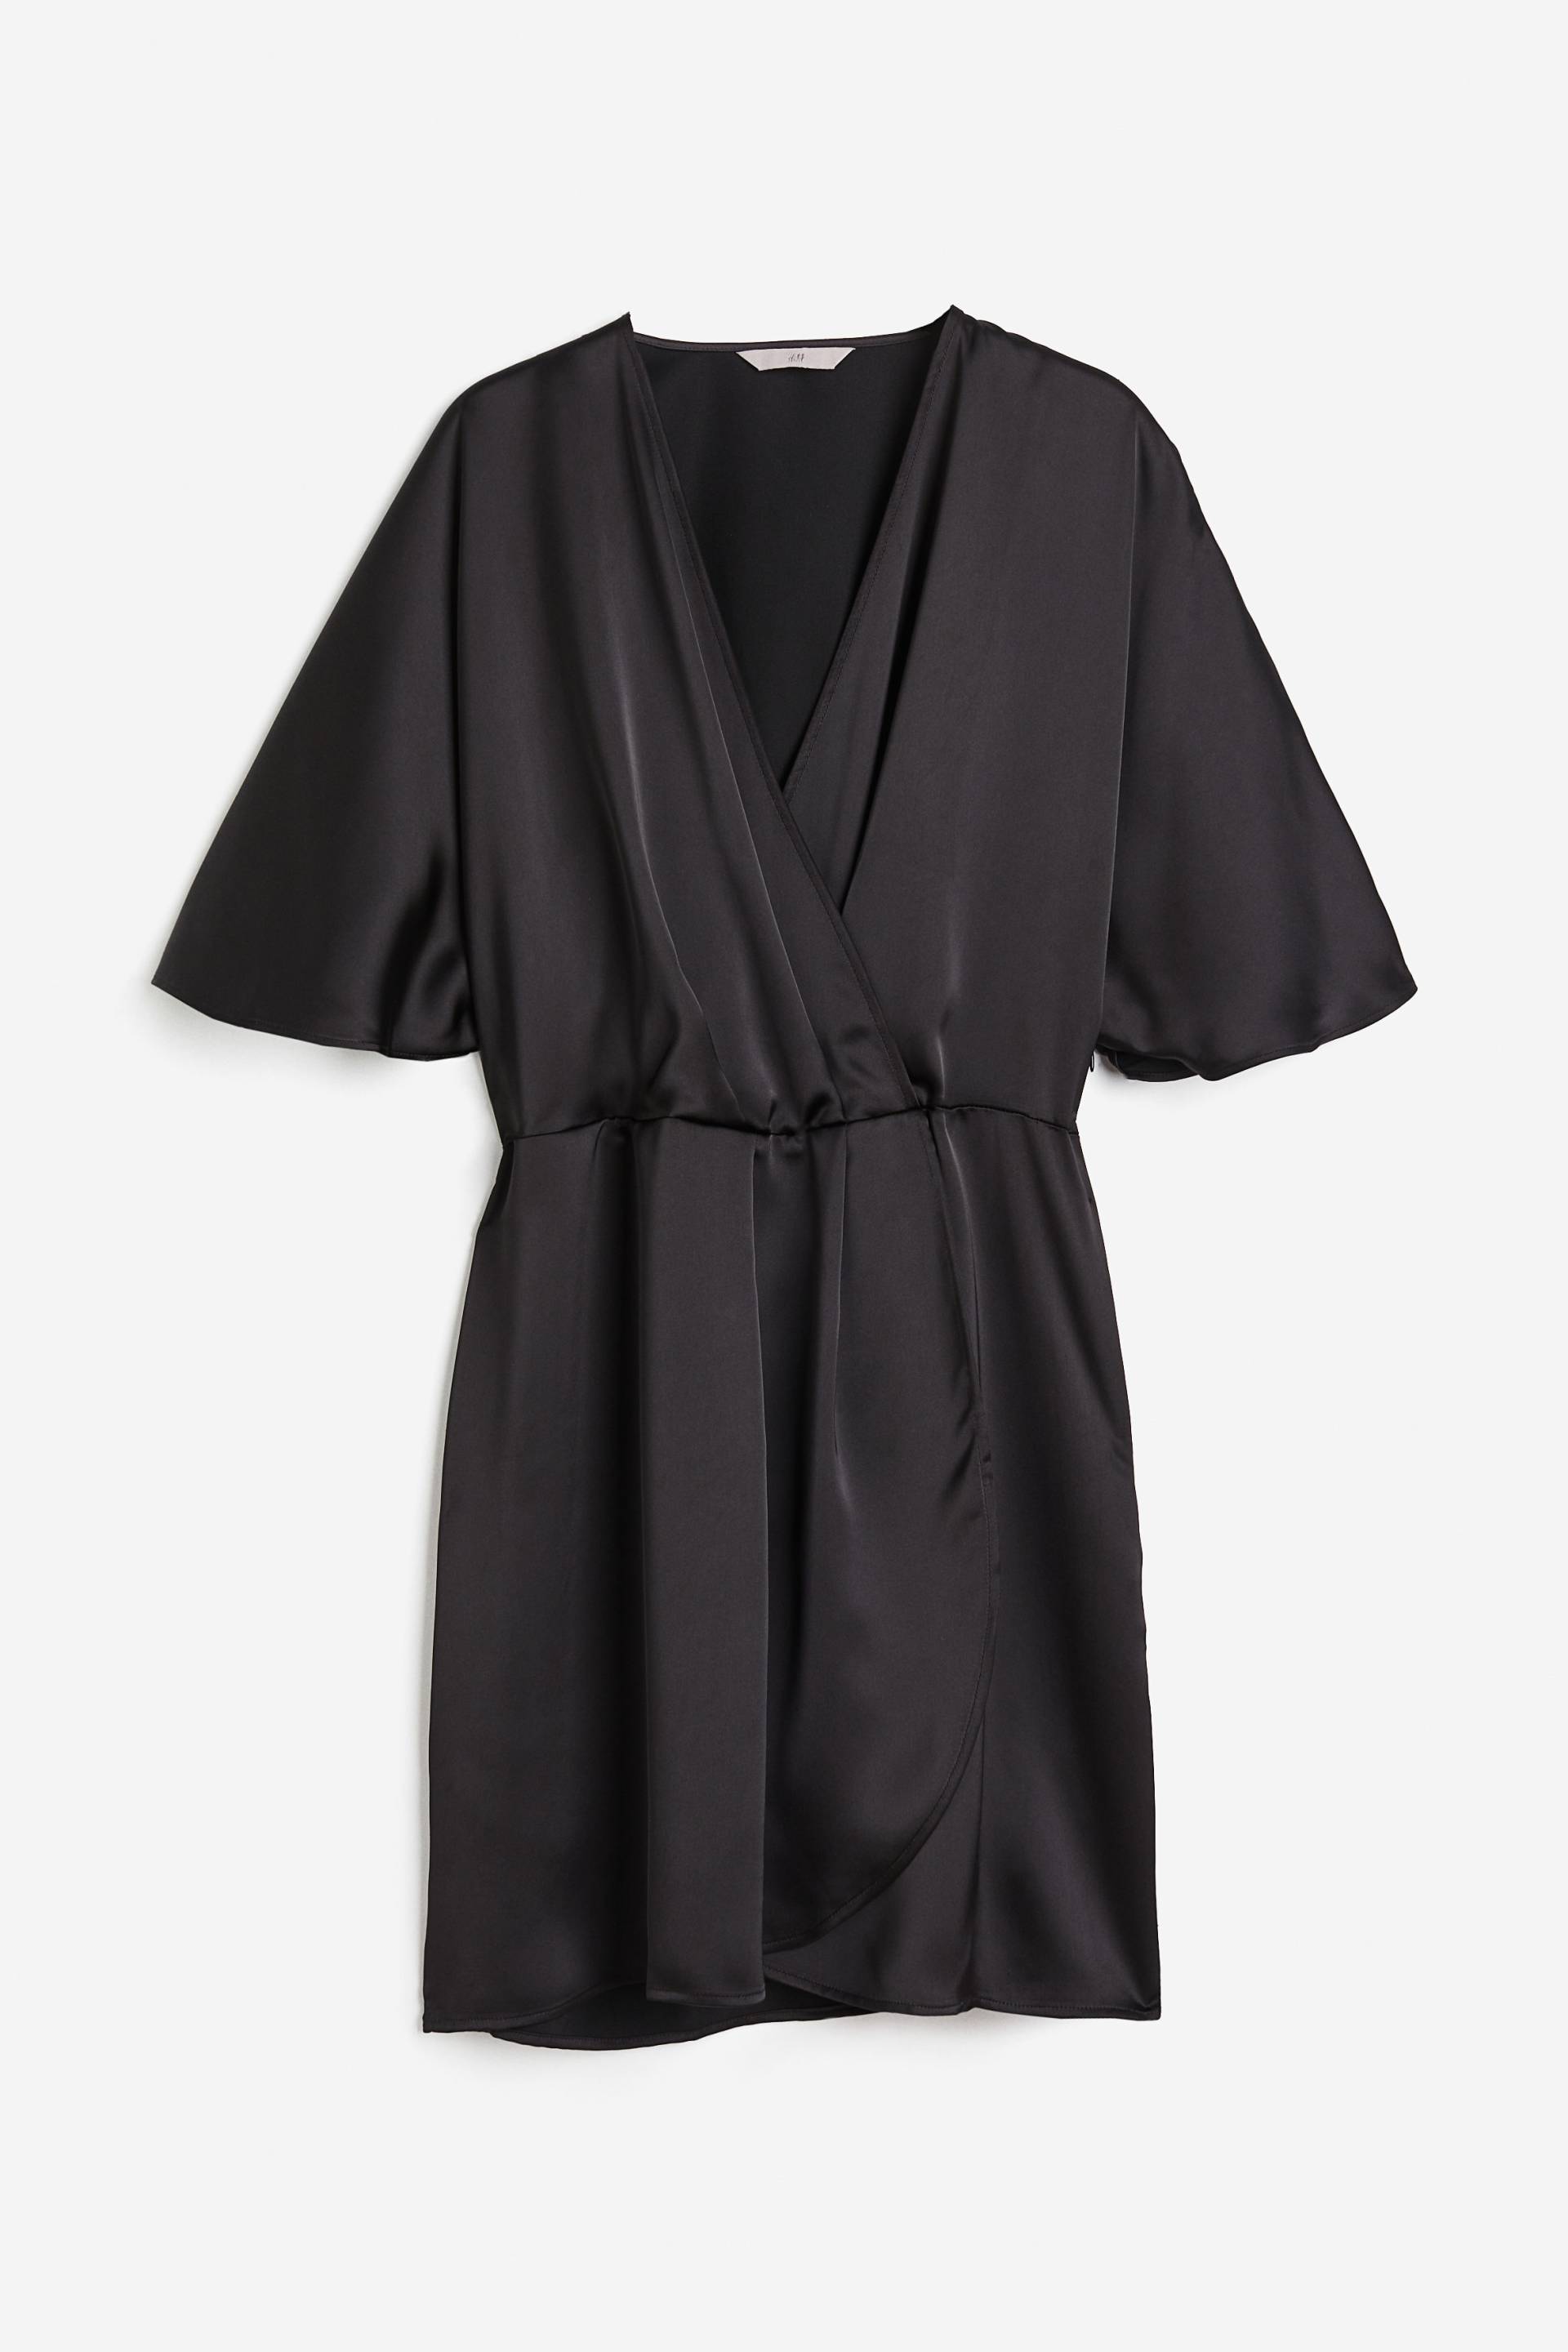 H&M Wickelkleid aus Satin Schwarz, Alltagskleider in Größe XL. Farbe: Black von H&M